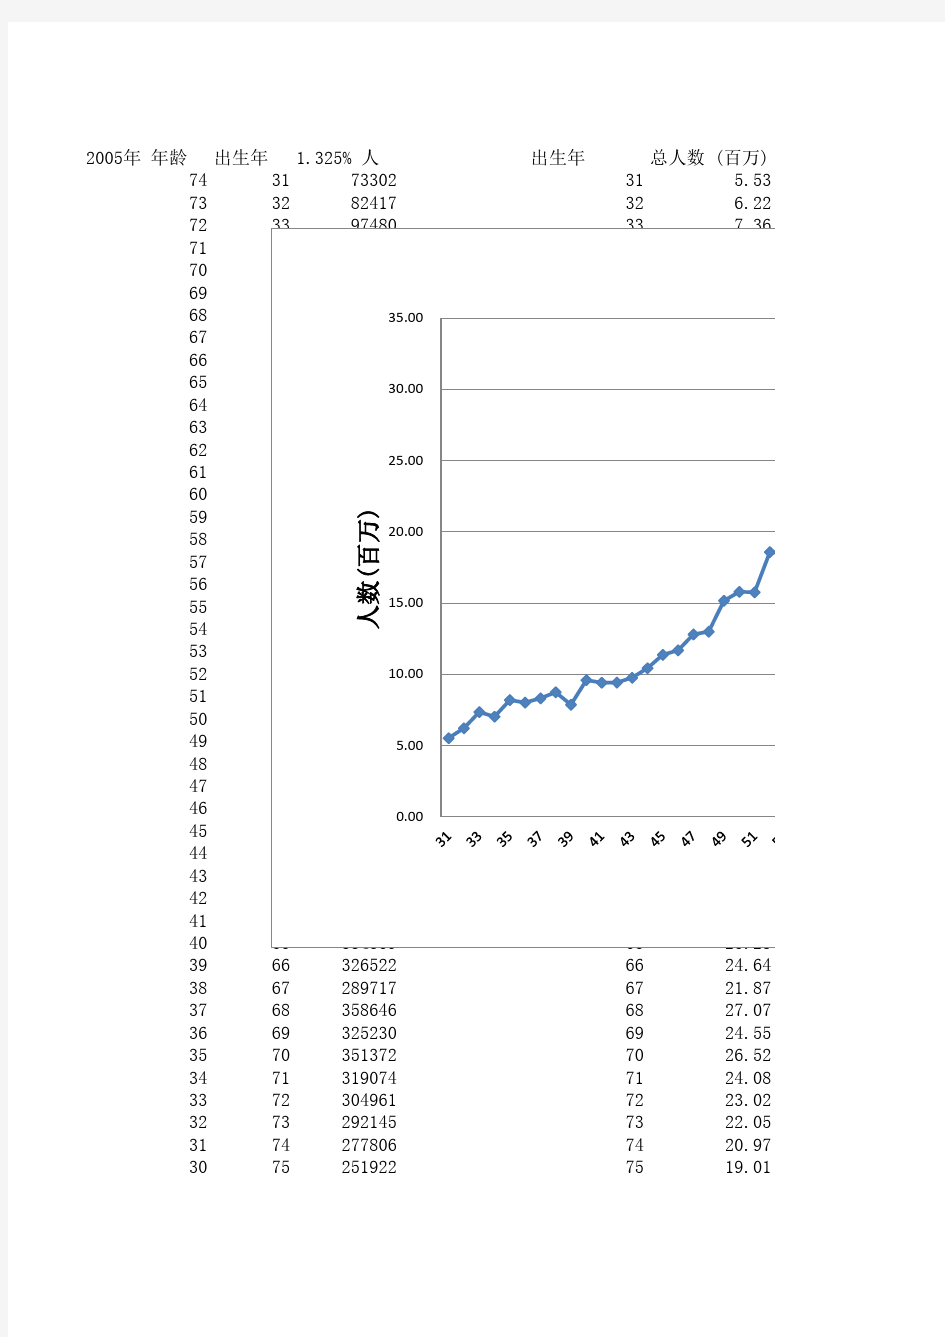 1931-2005中国人口统计数据及分析